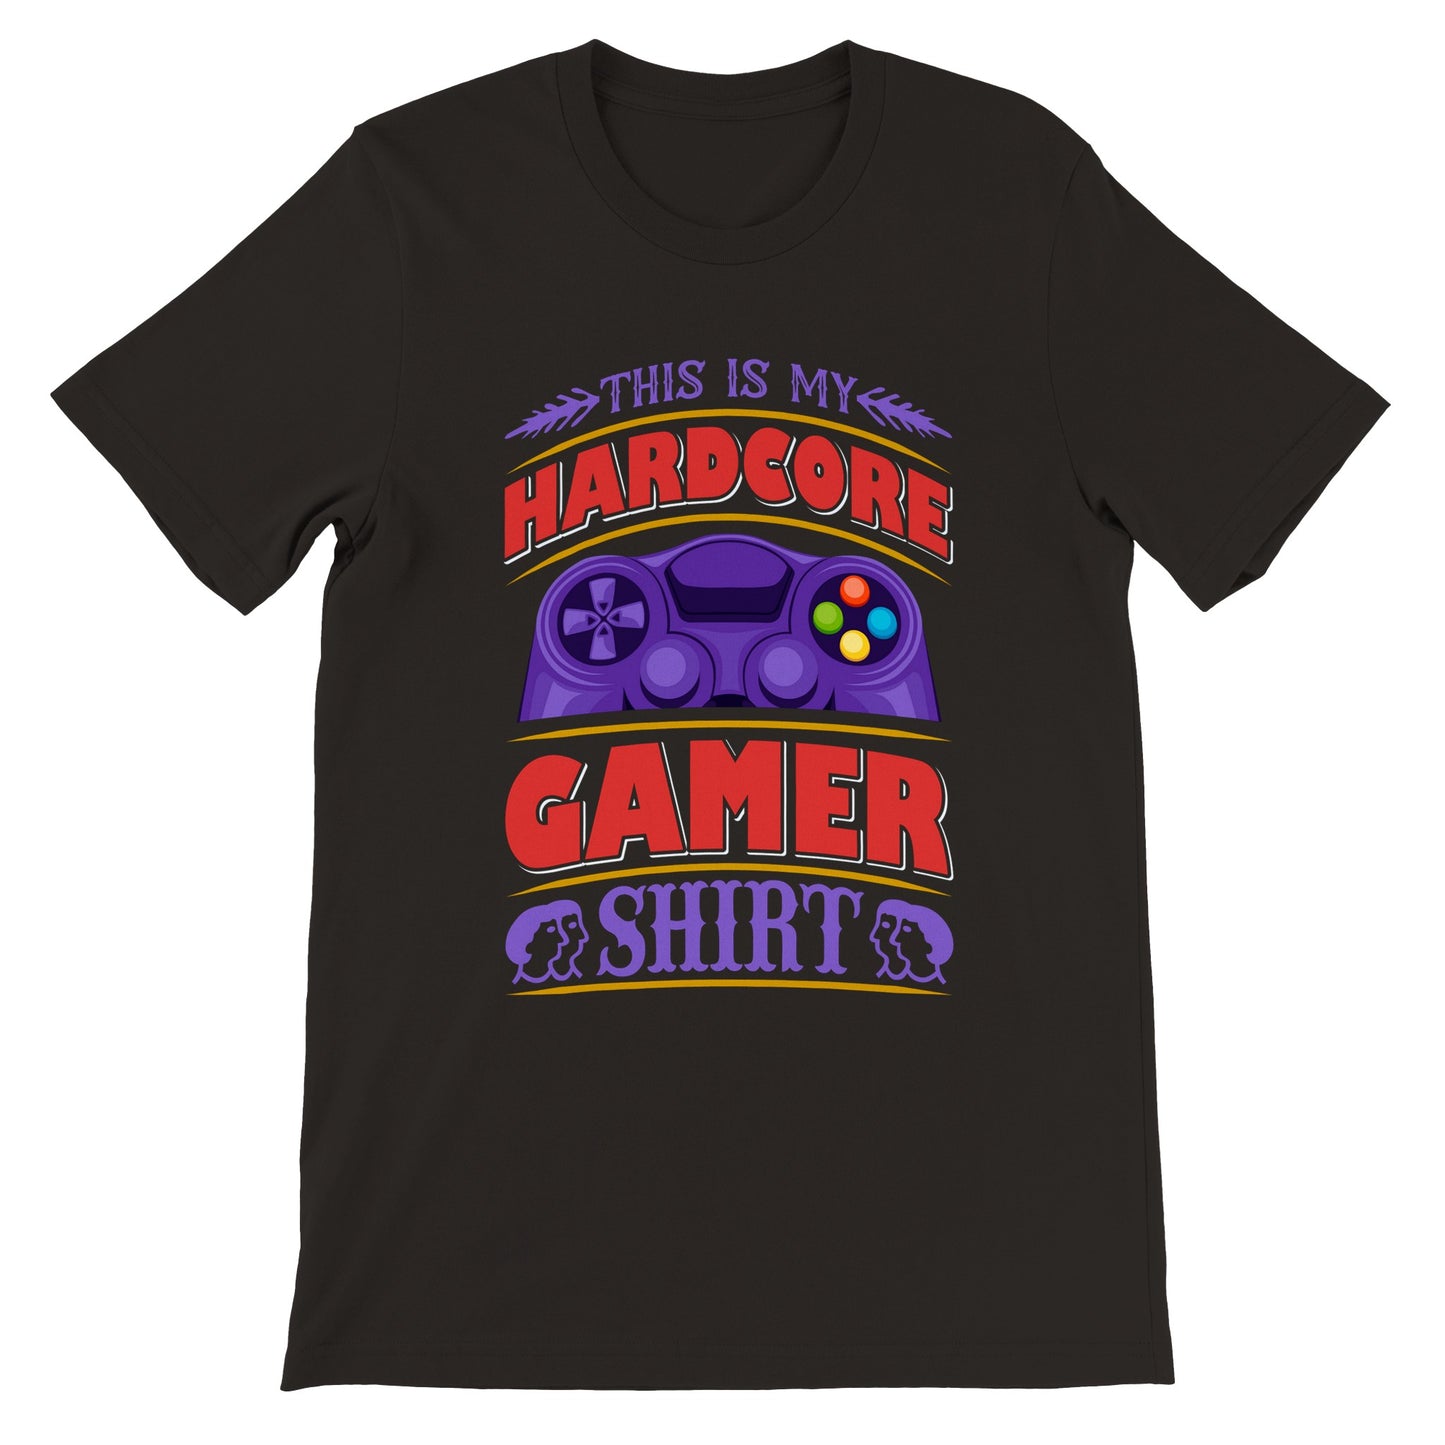 Gaming T-shirts - This Is My Hardcore Gamer Shirt - Premium Unisex T-shirt 